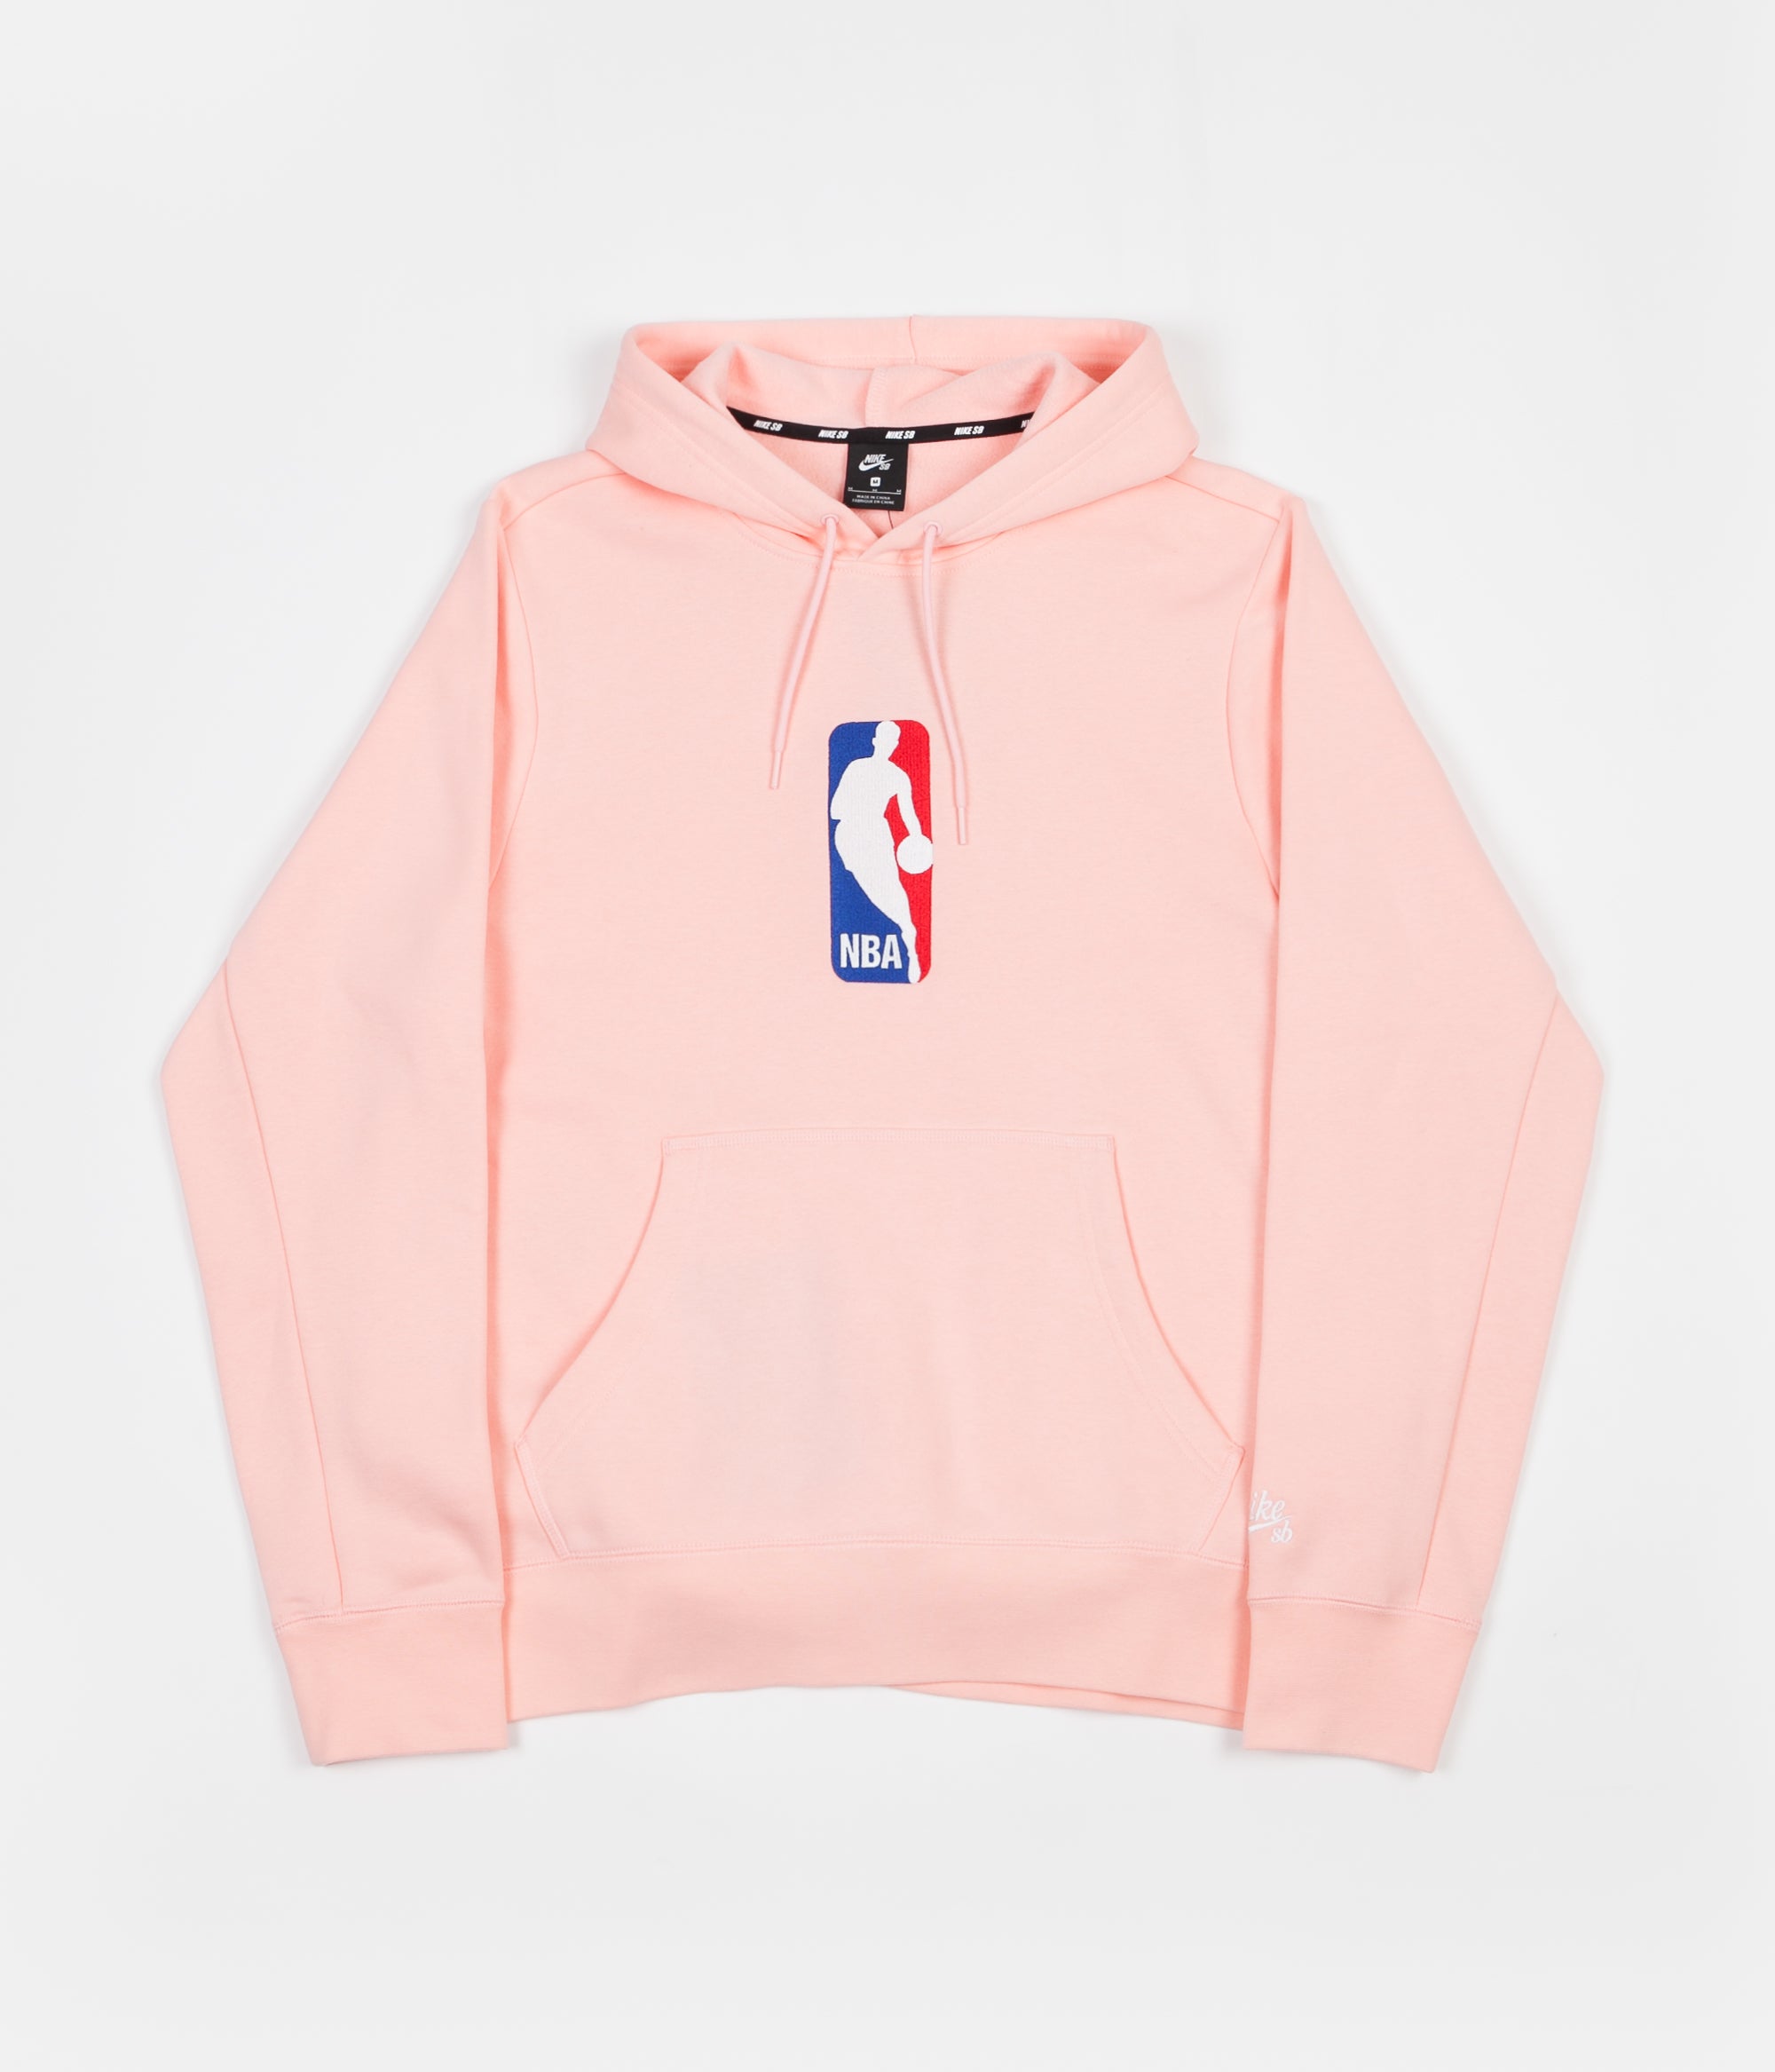 nike sb pink hoodie